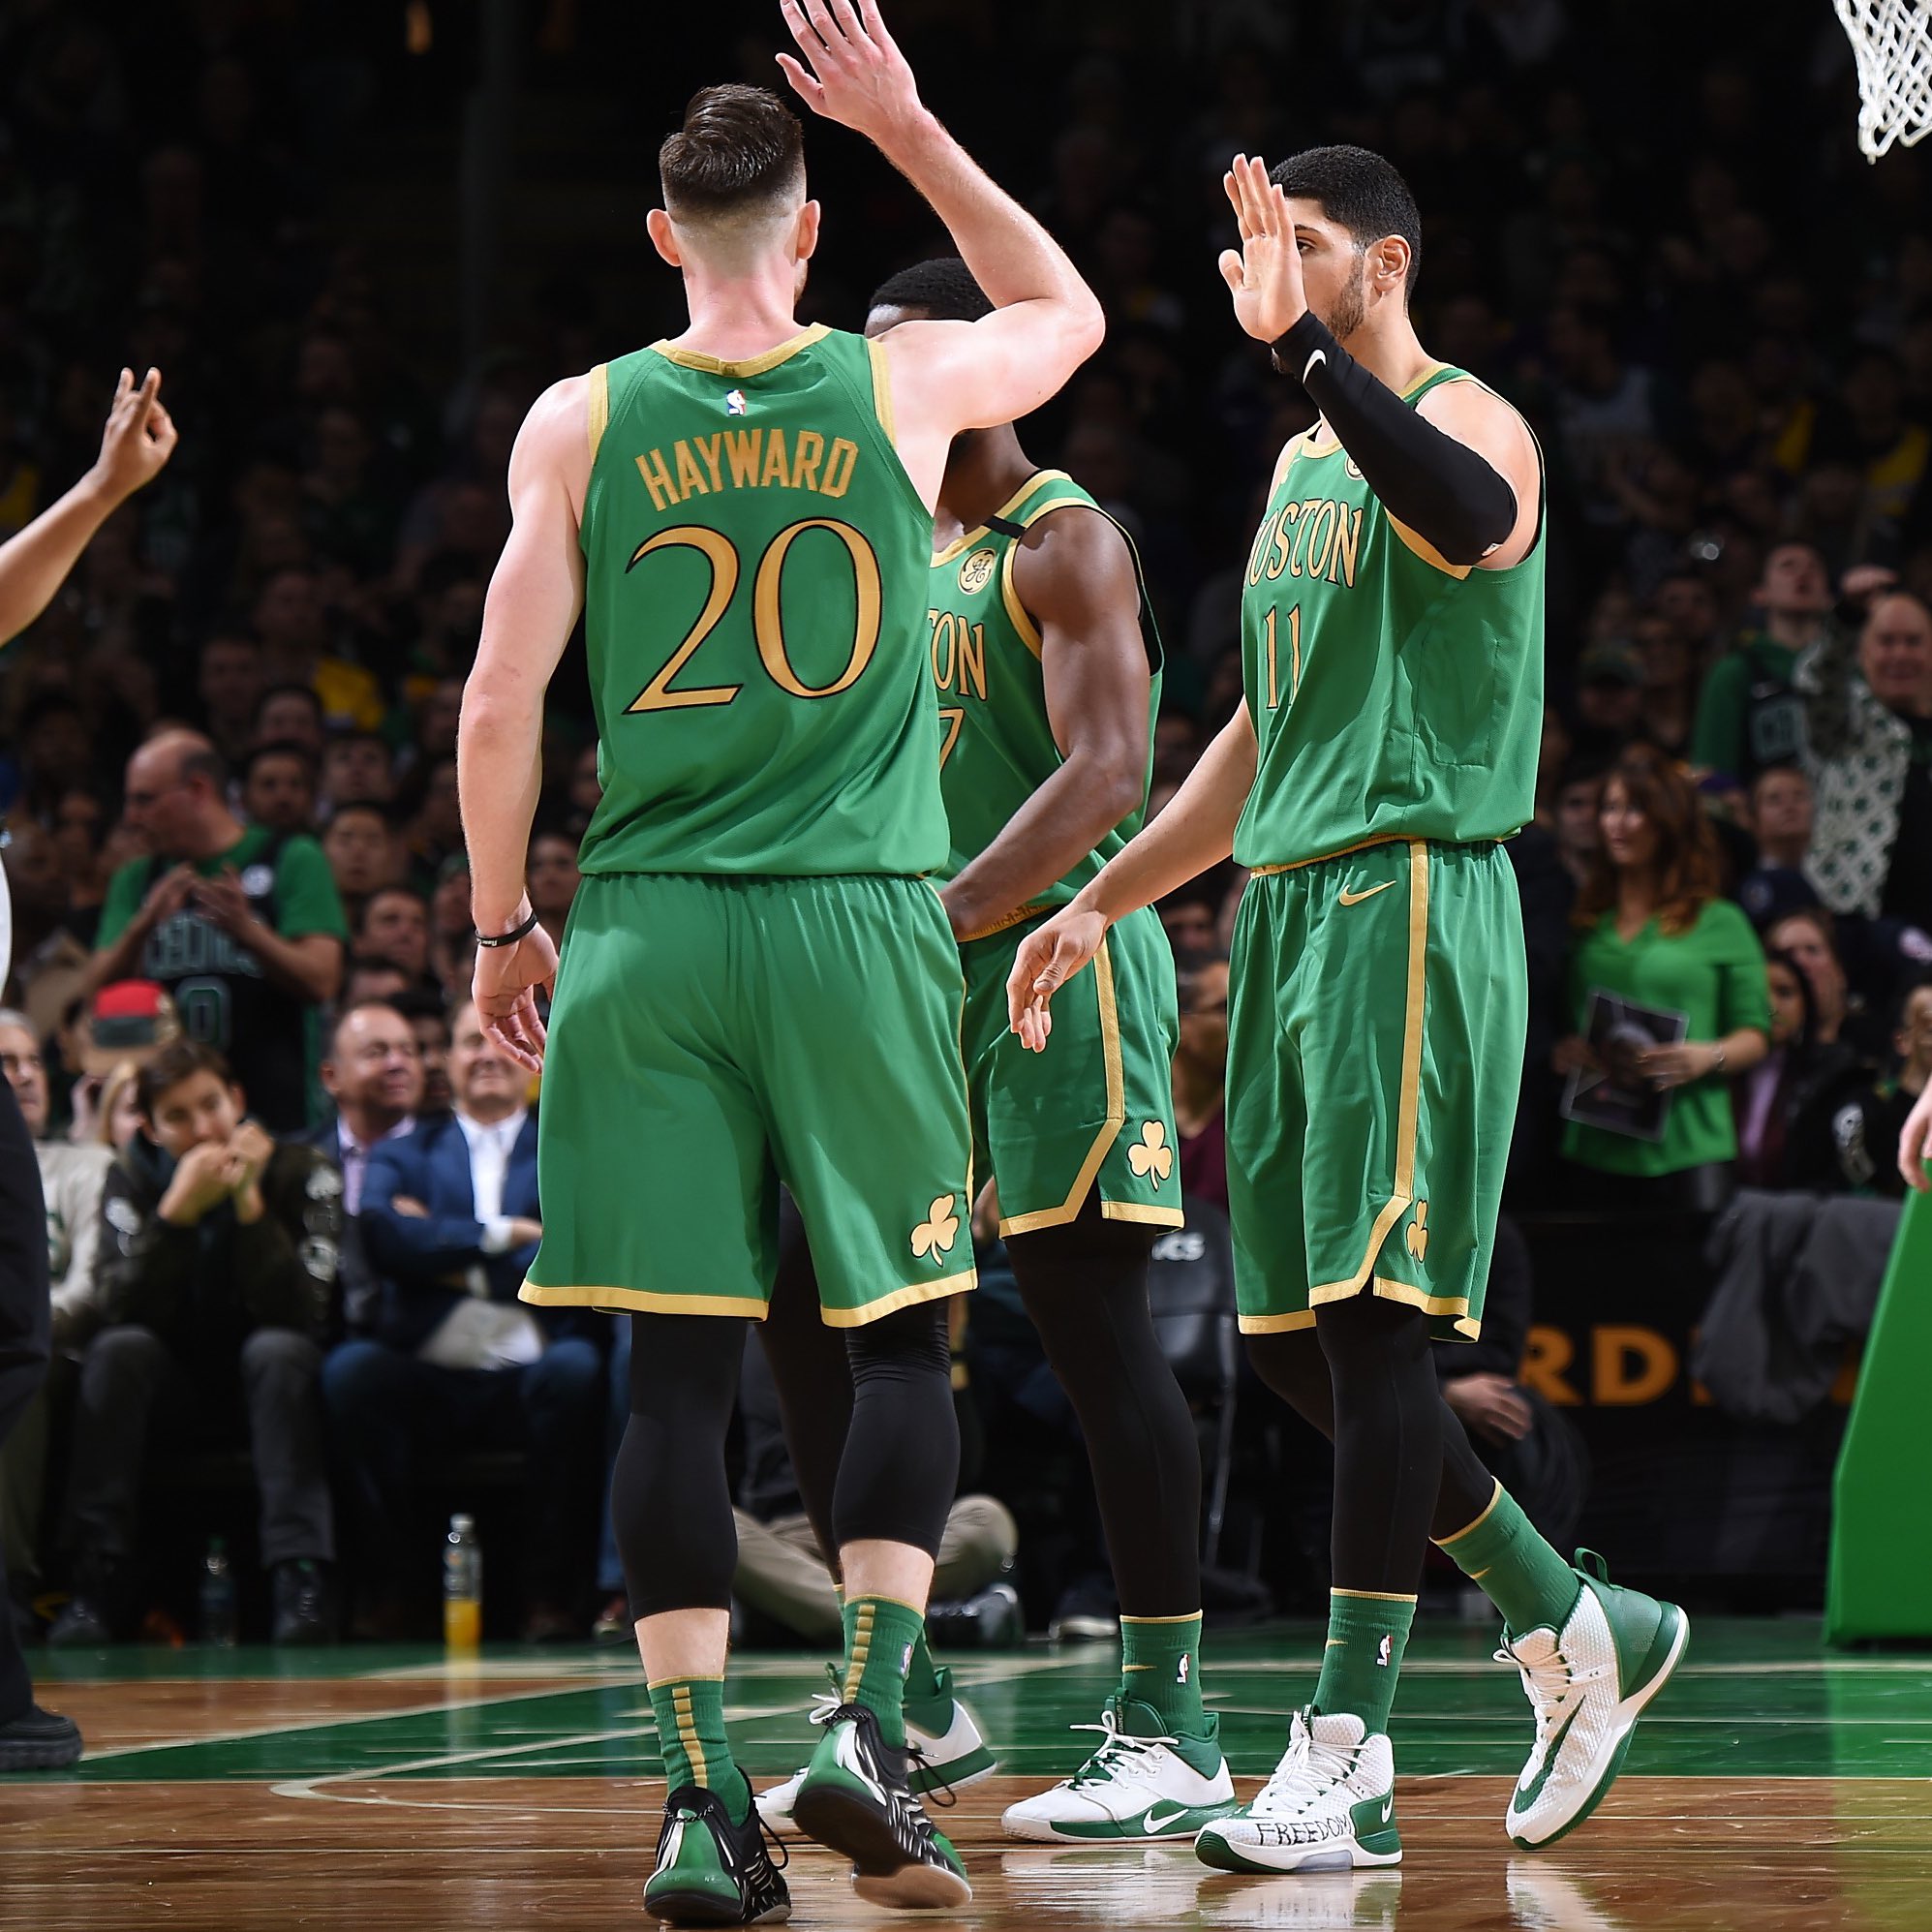 Hayward's 29 leads Celtics past T-Wolves